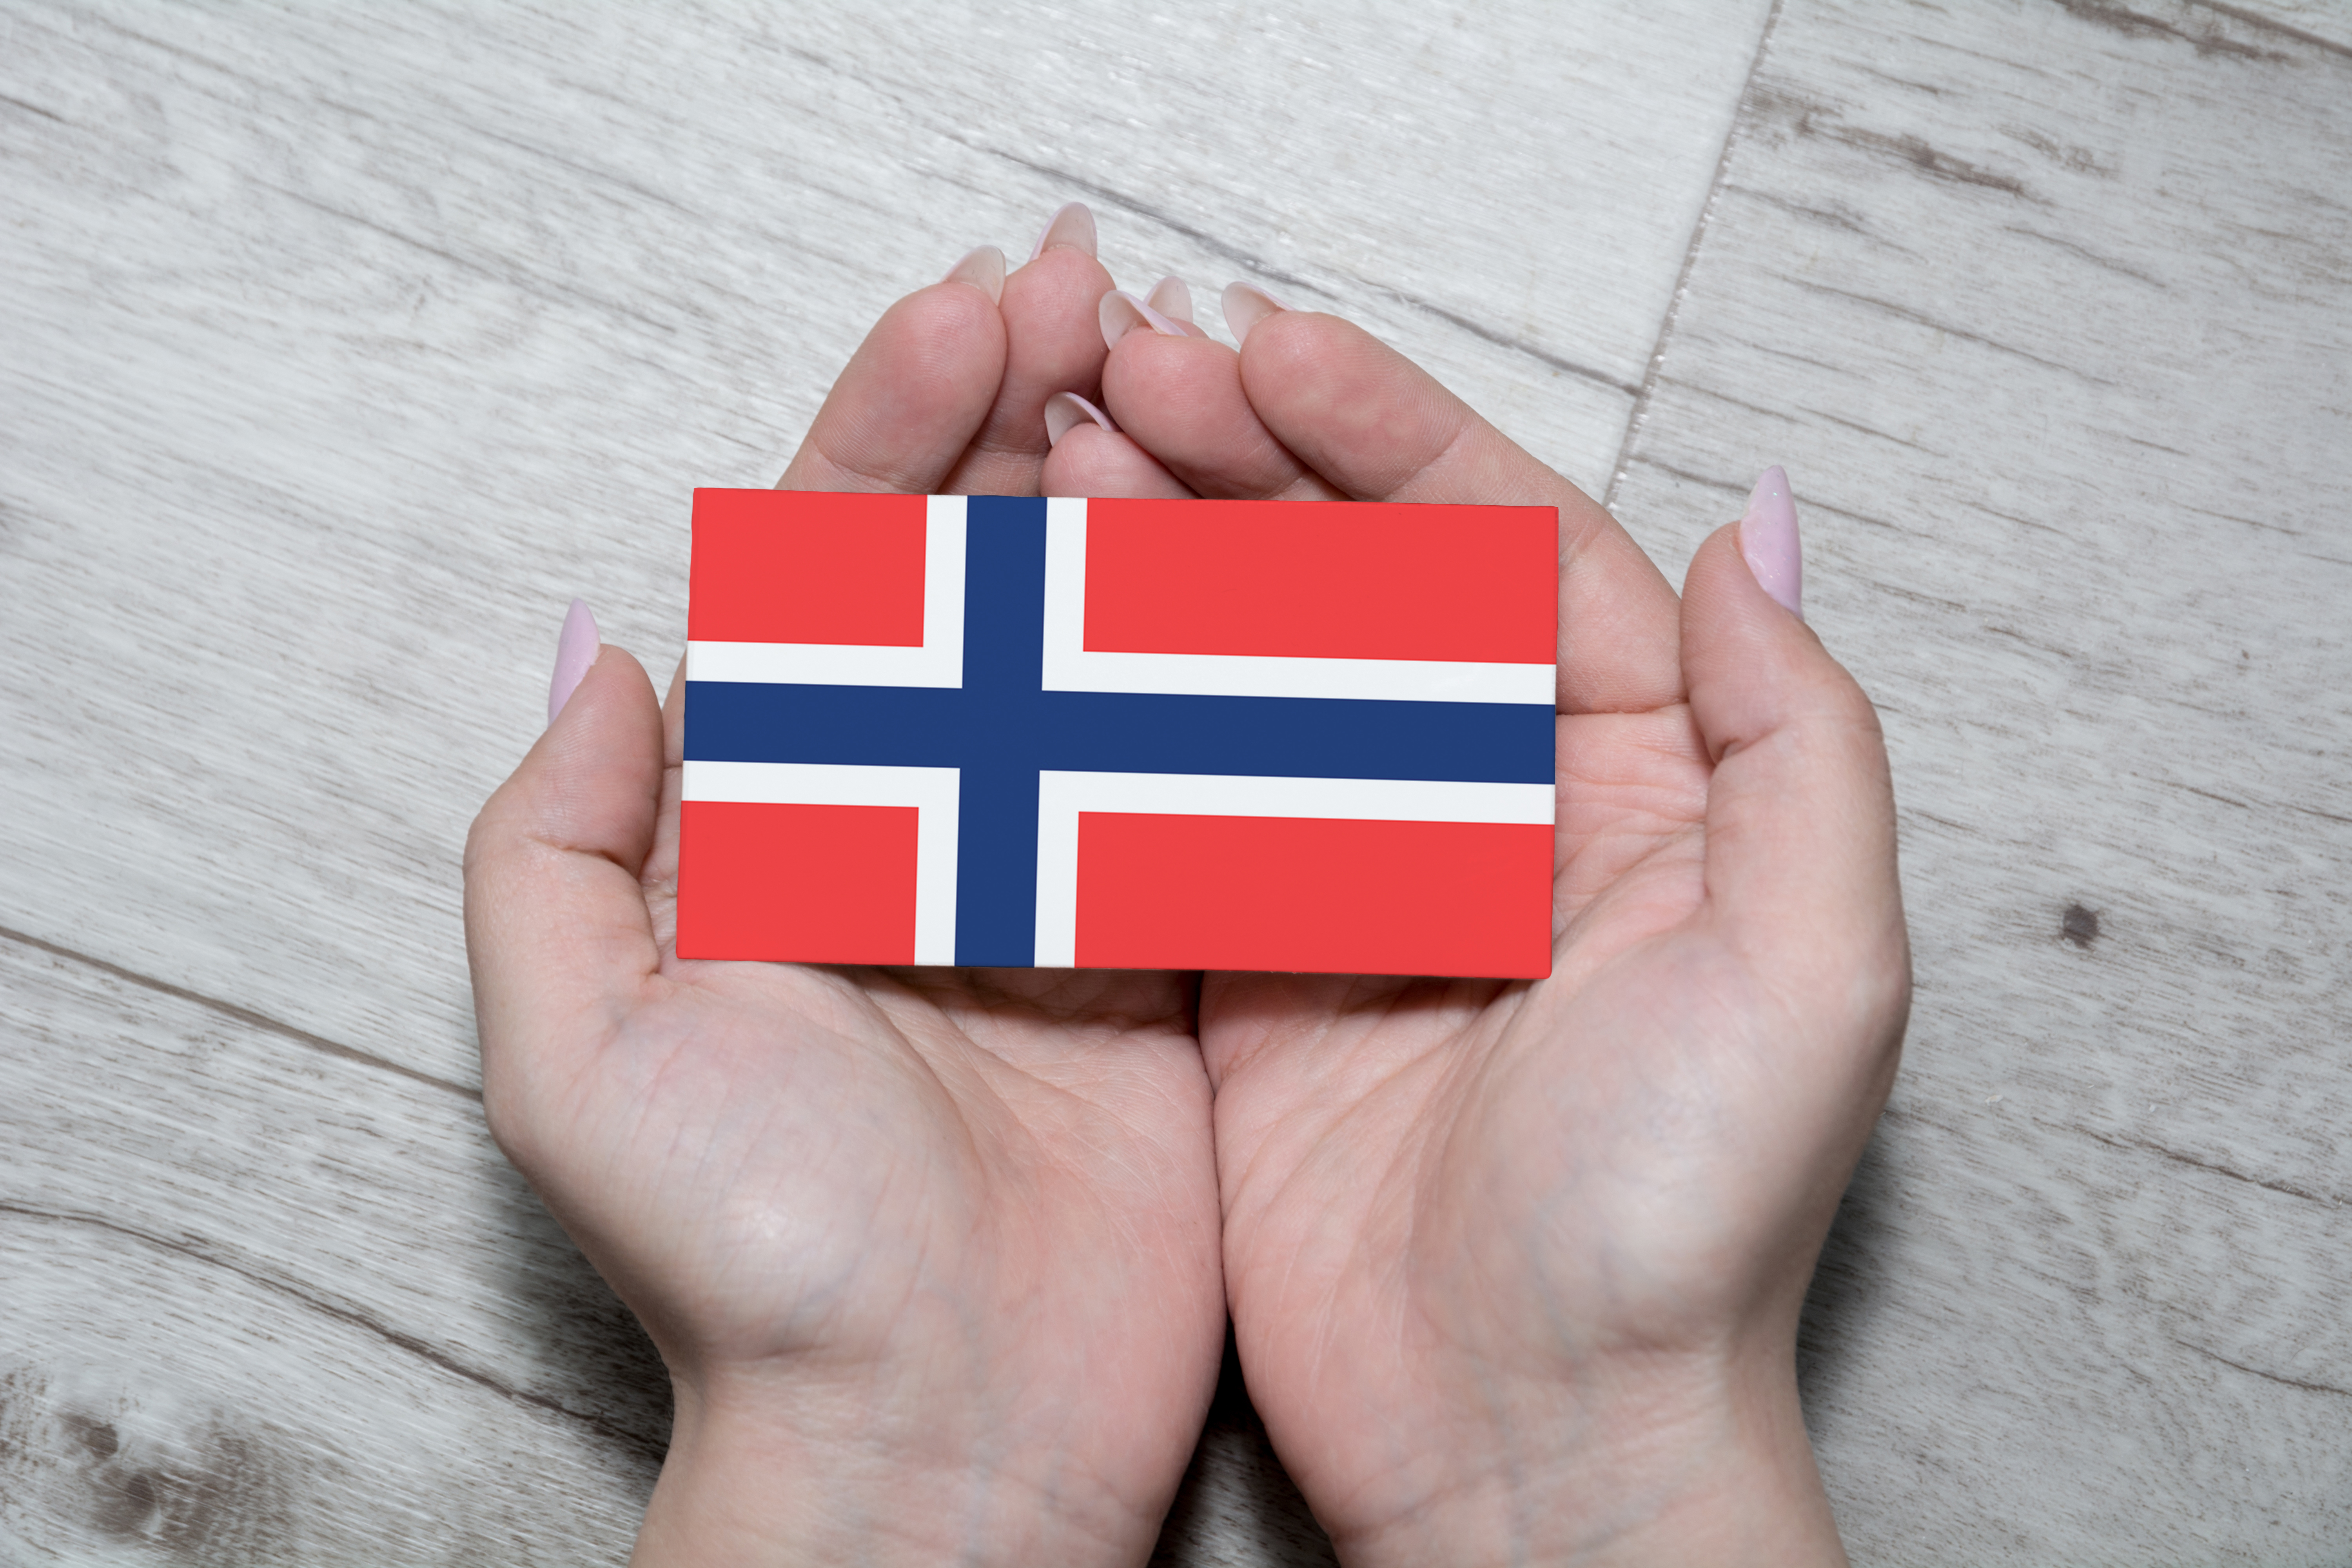 Флаг Норвегии, работа в которой доступна для иностранцев